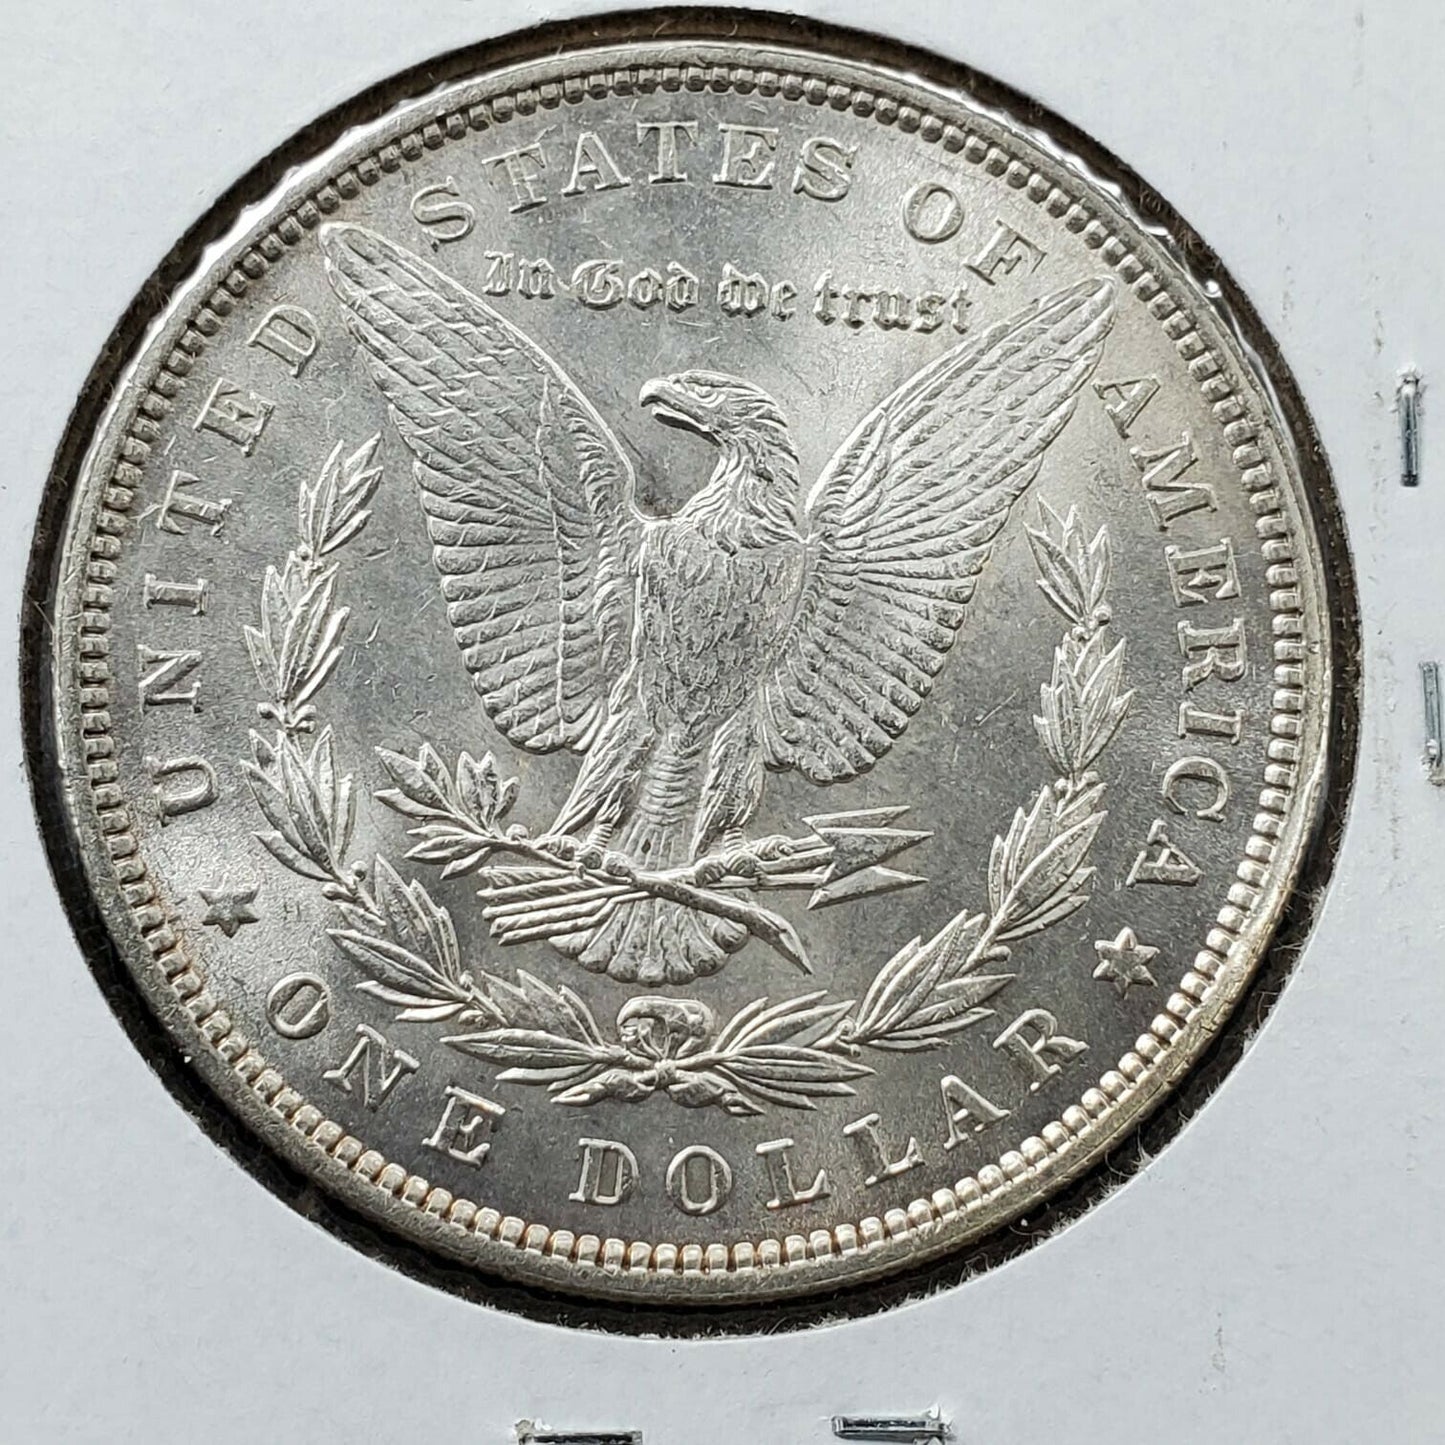 1896 P $1 Morgan Silver Dollar Coin AVG BU UNC Uncirculated Condition Nice Coin